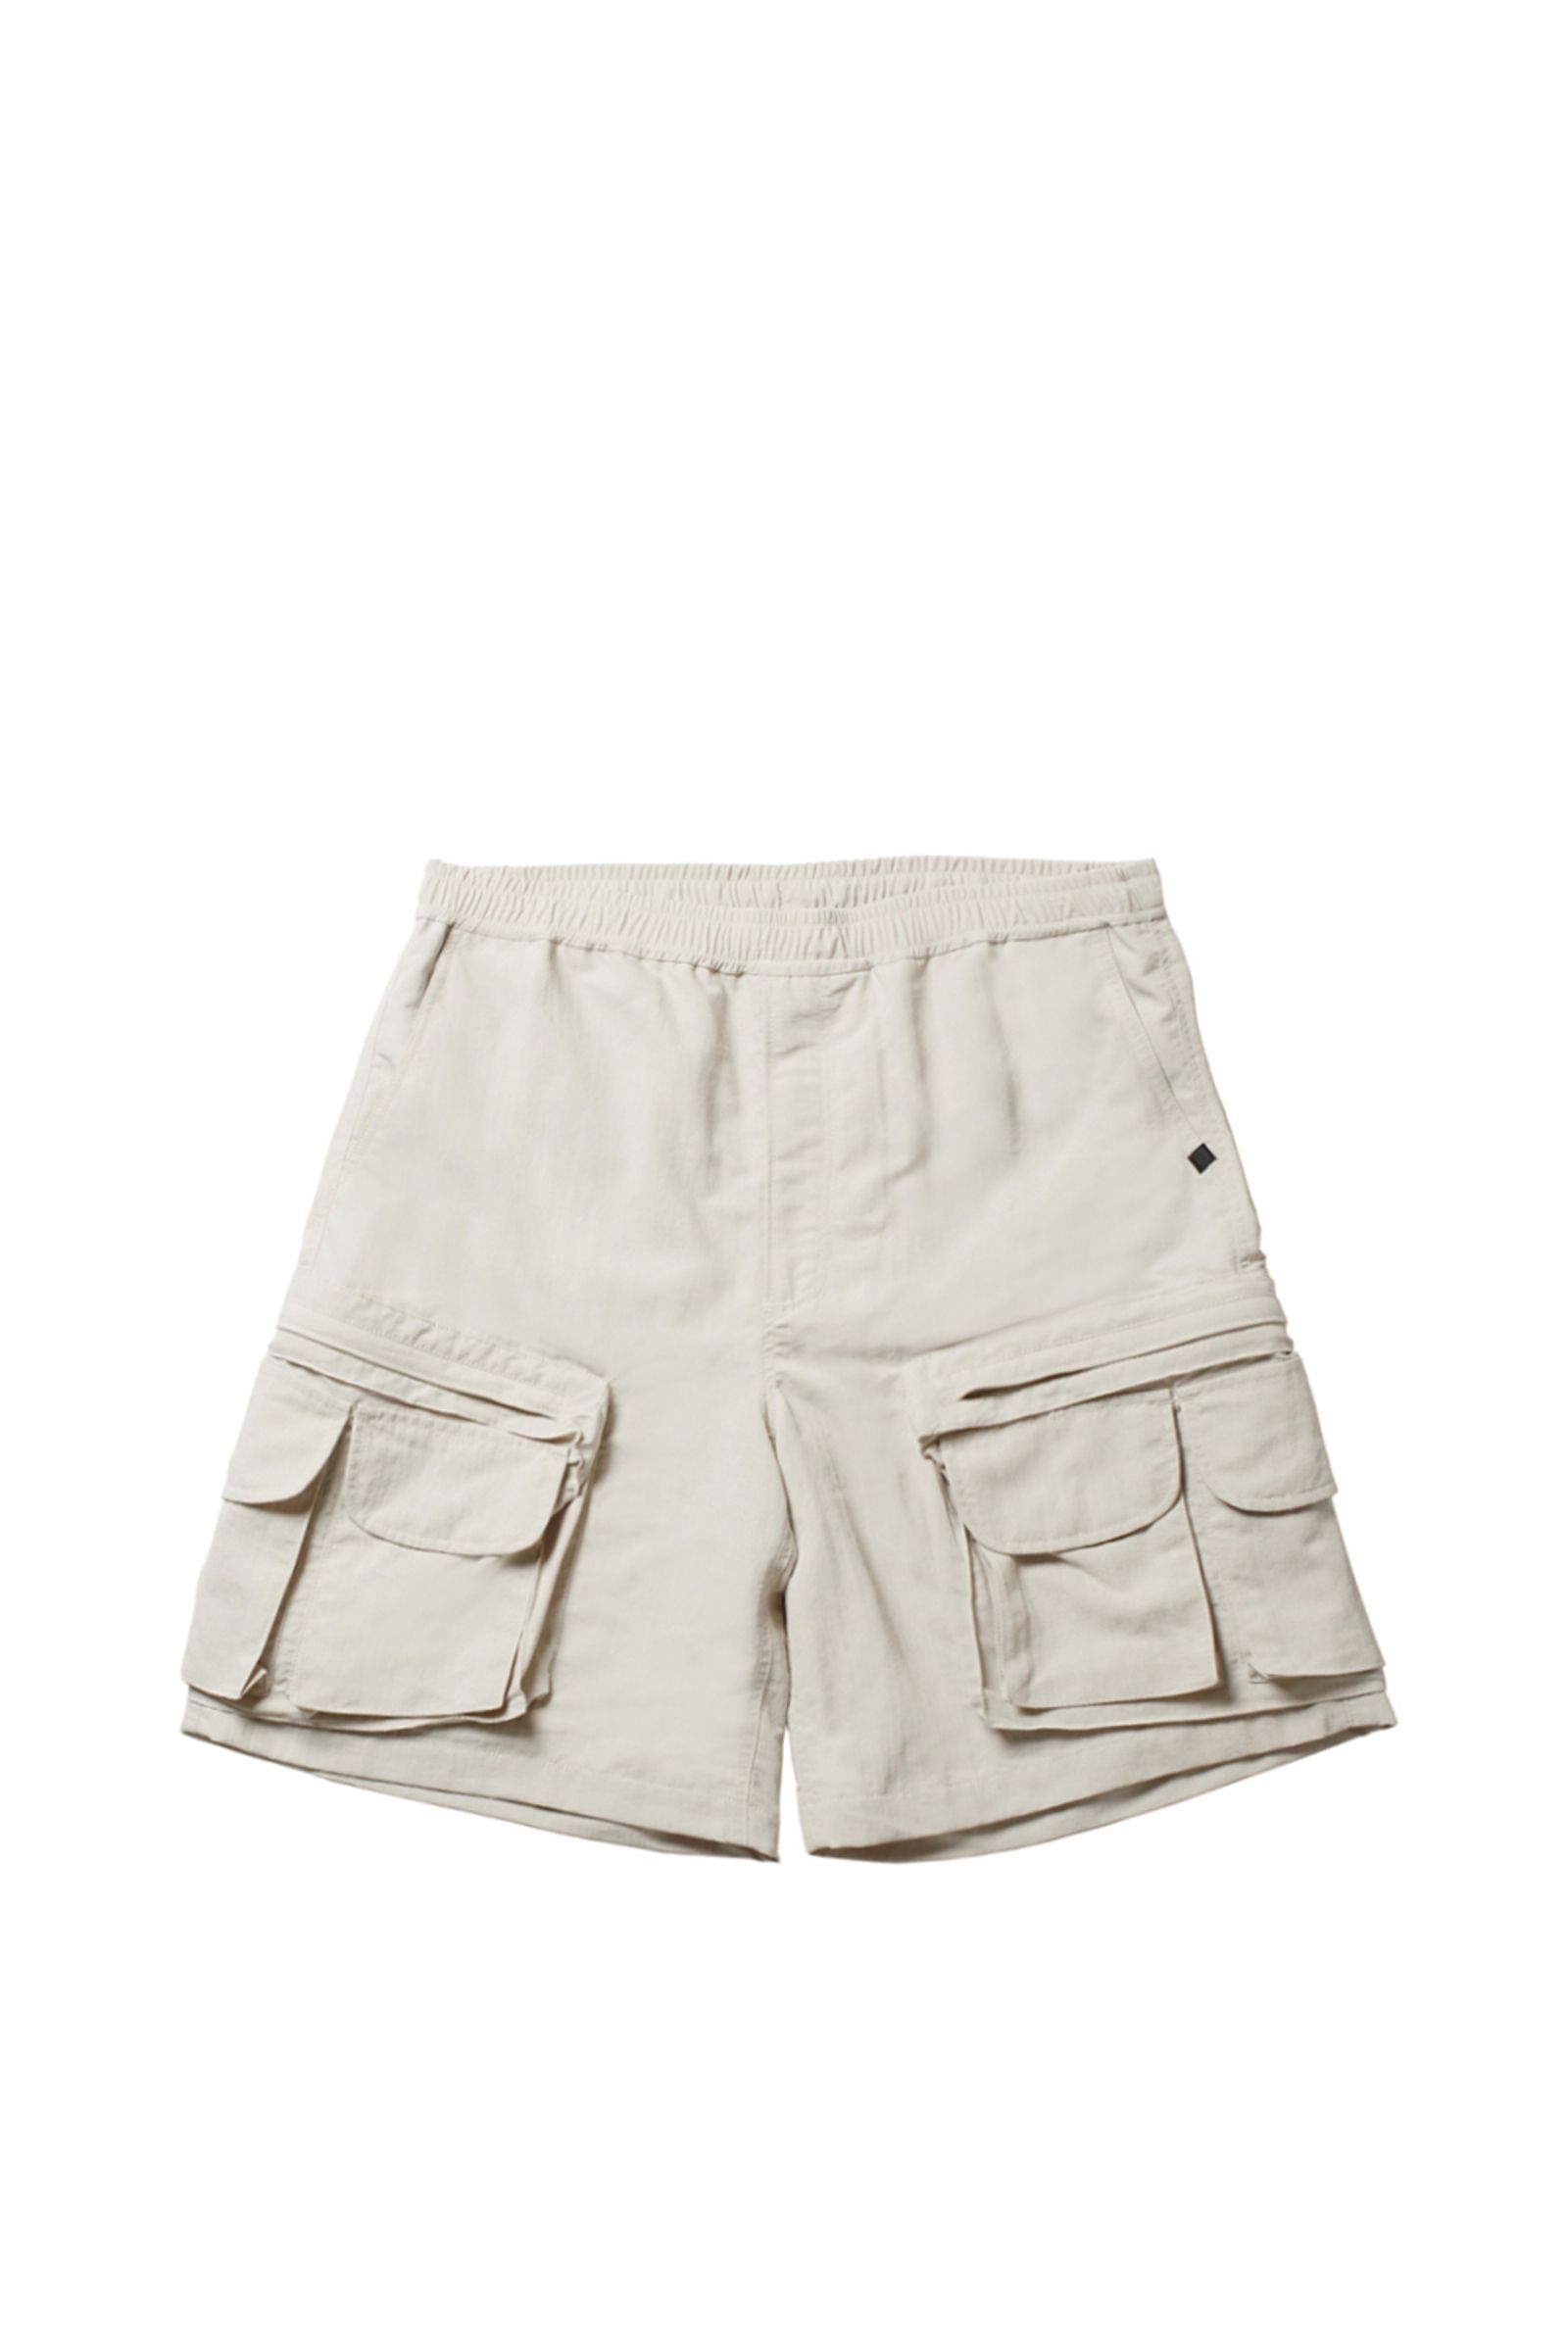 DAIWA PIER39 - tech perfect fishing shorts-ecru-23ss men | asterisk